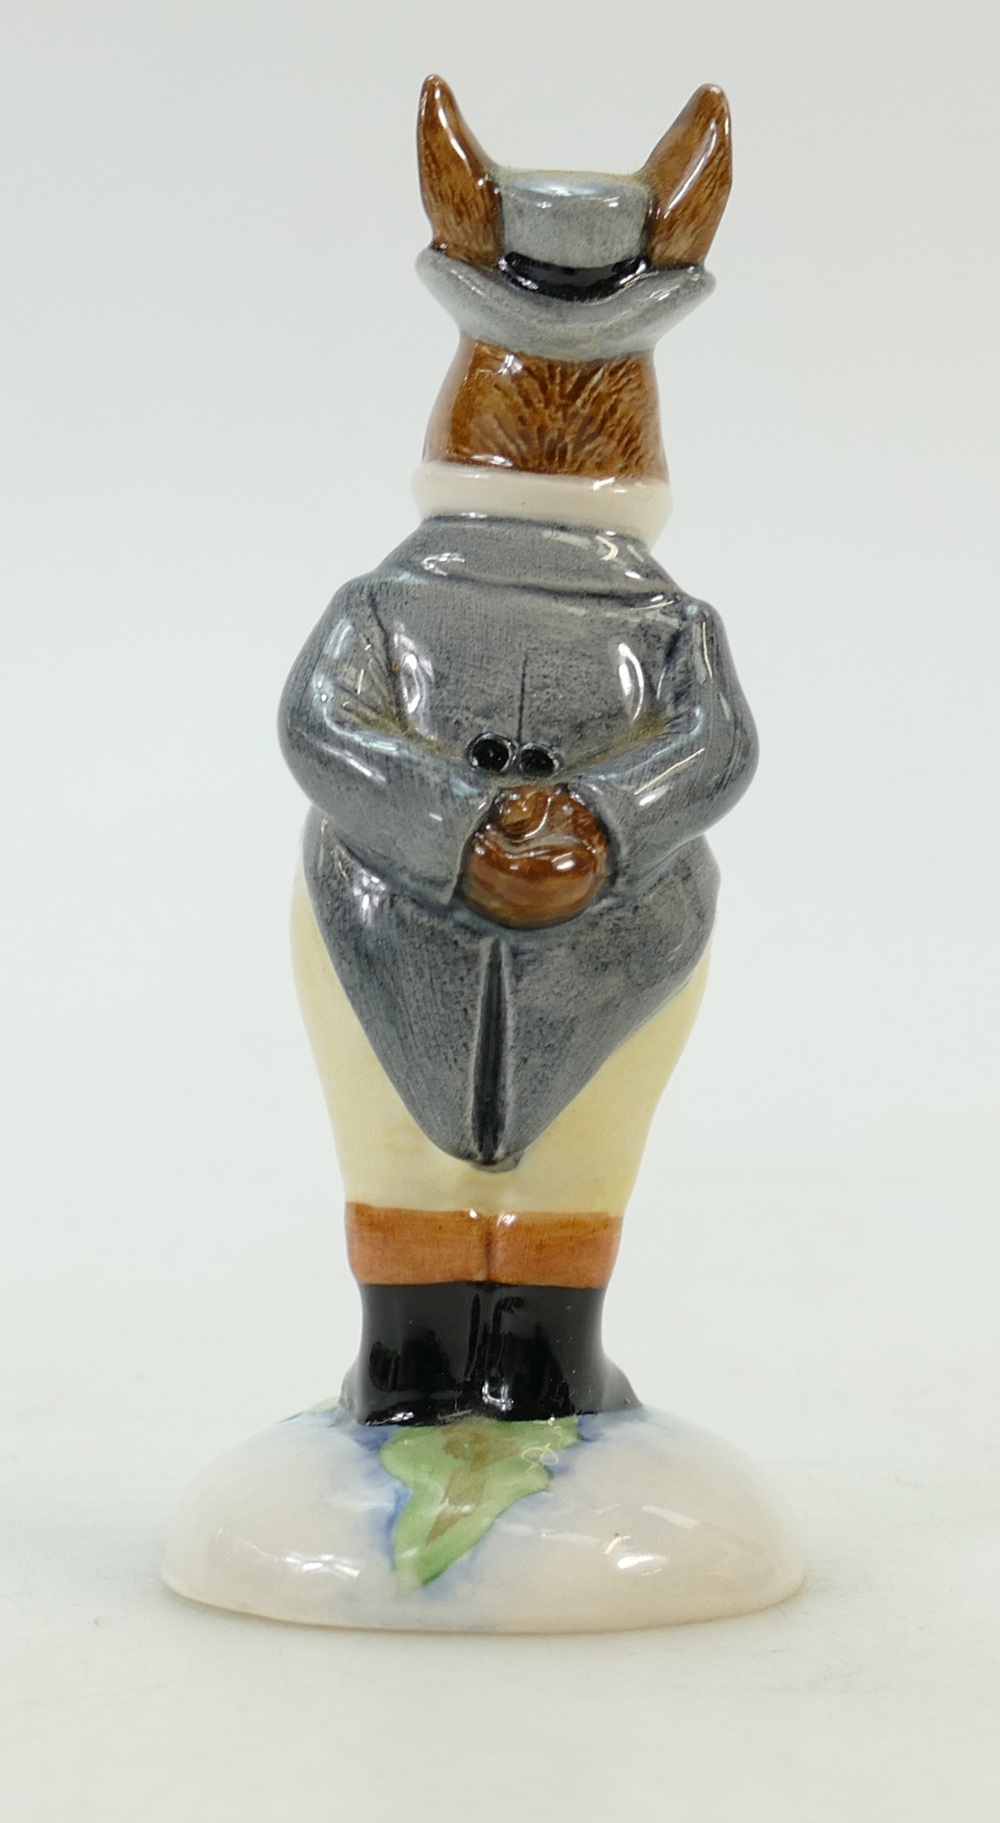 Royal Doulton Bunnykins figure DB134: John Bull UKI Ceramics limited edition ref DB134. - Image 3 of 5